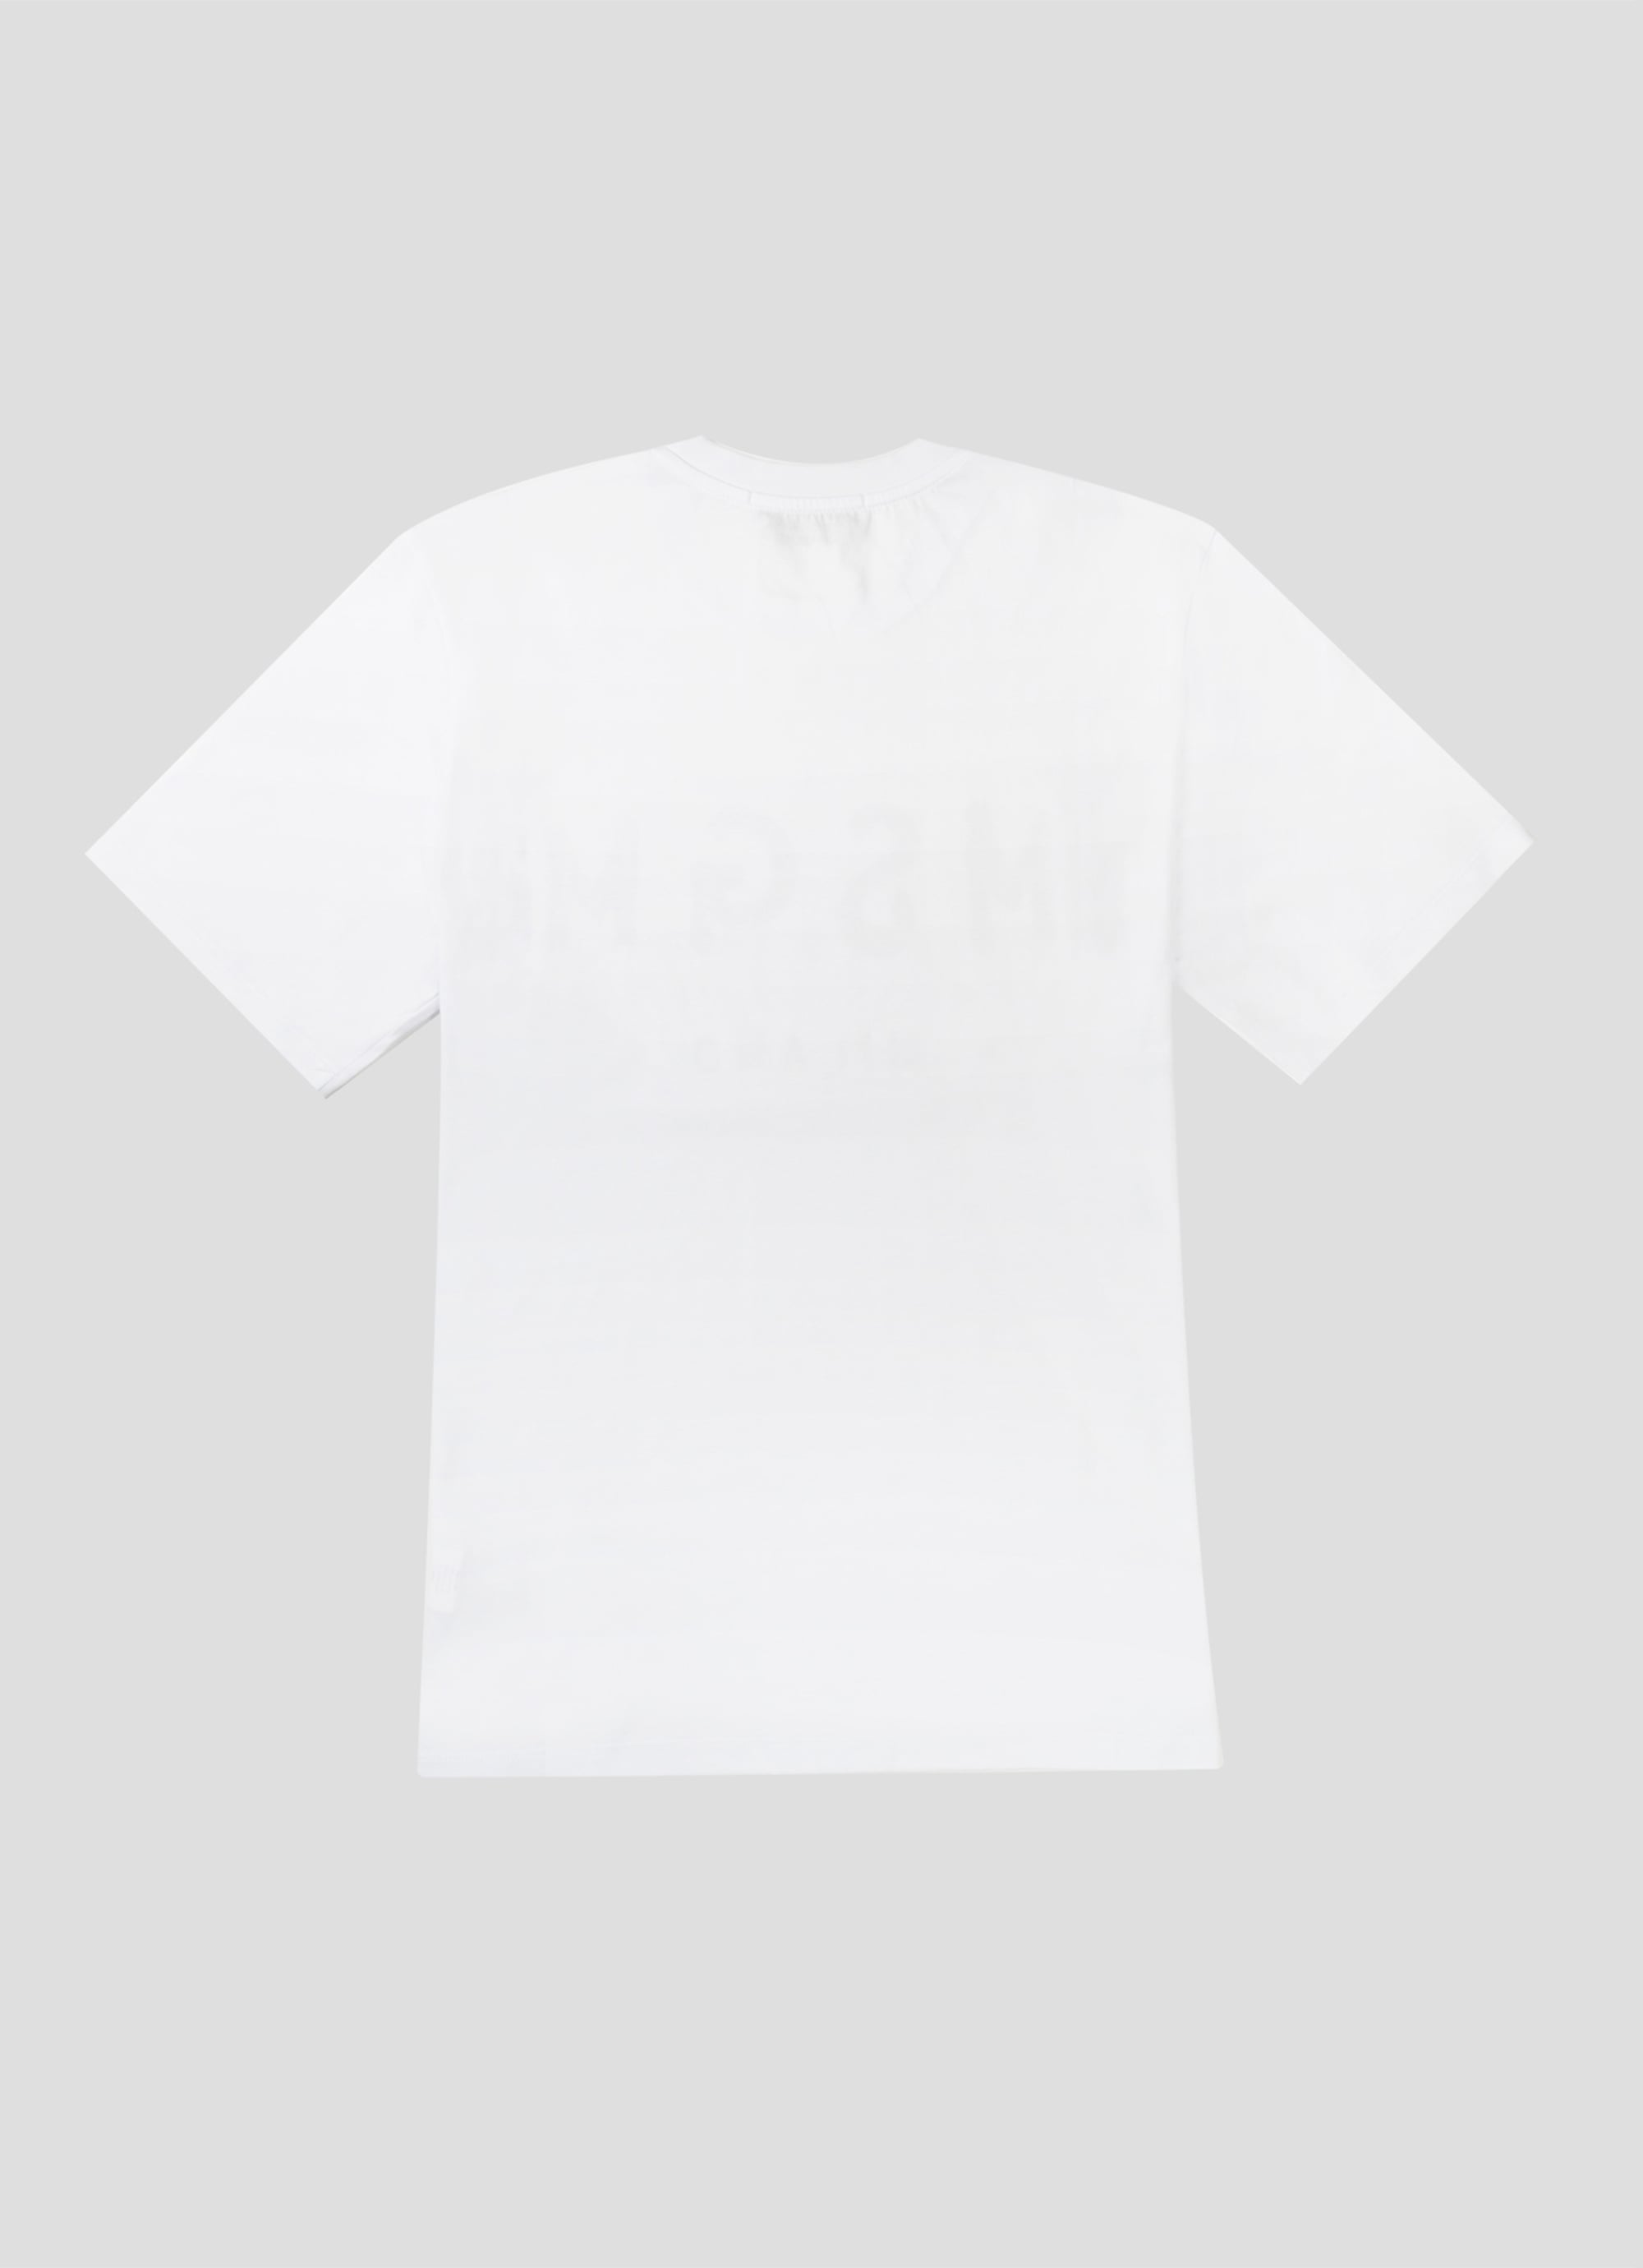 【NEW】ブラッシュロゴTシャツ 詳細画像 ホワイト×ブルー 2